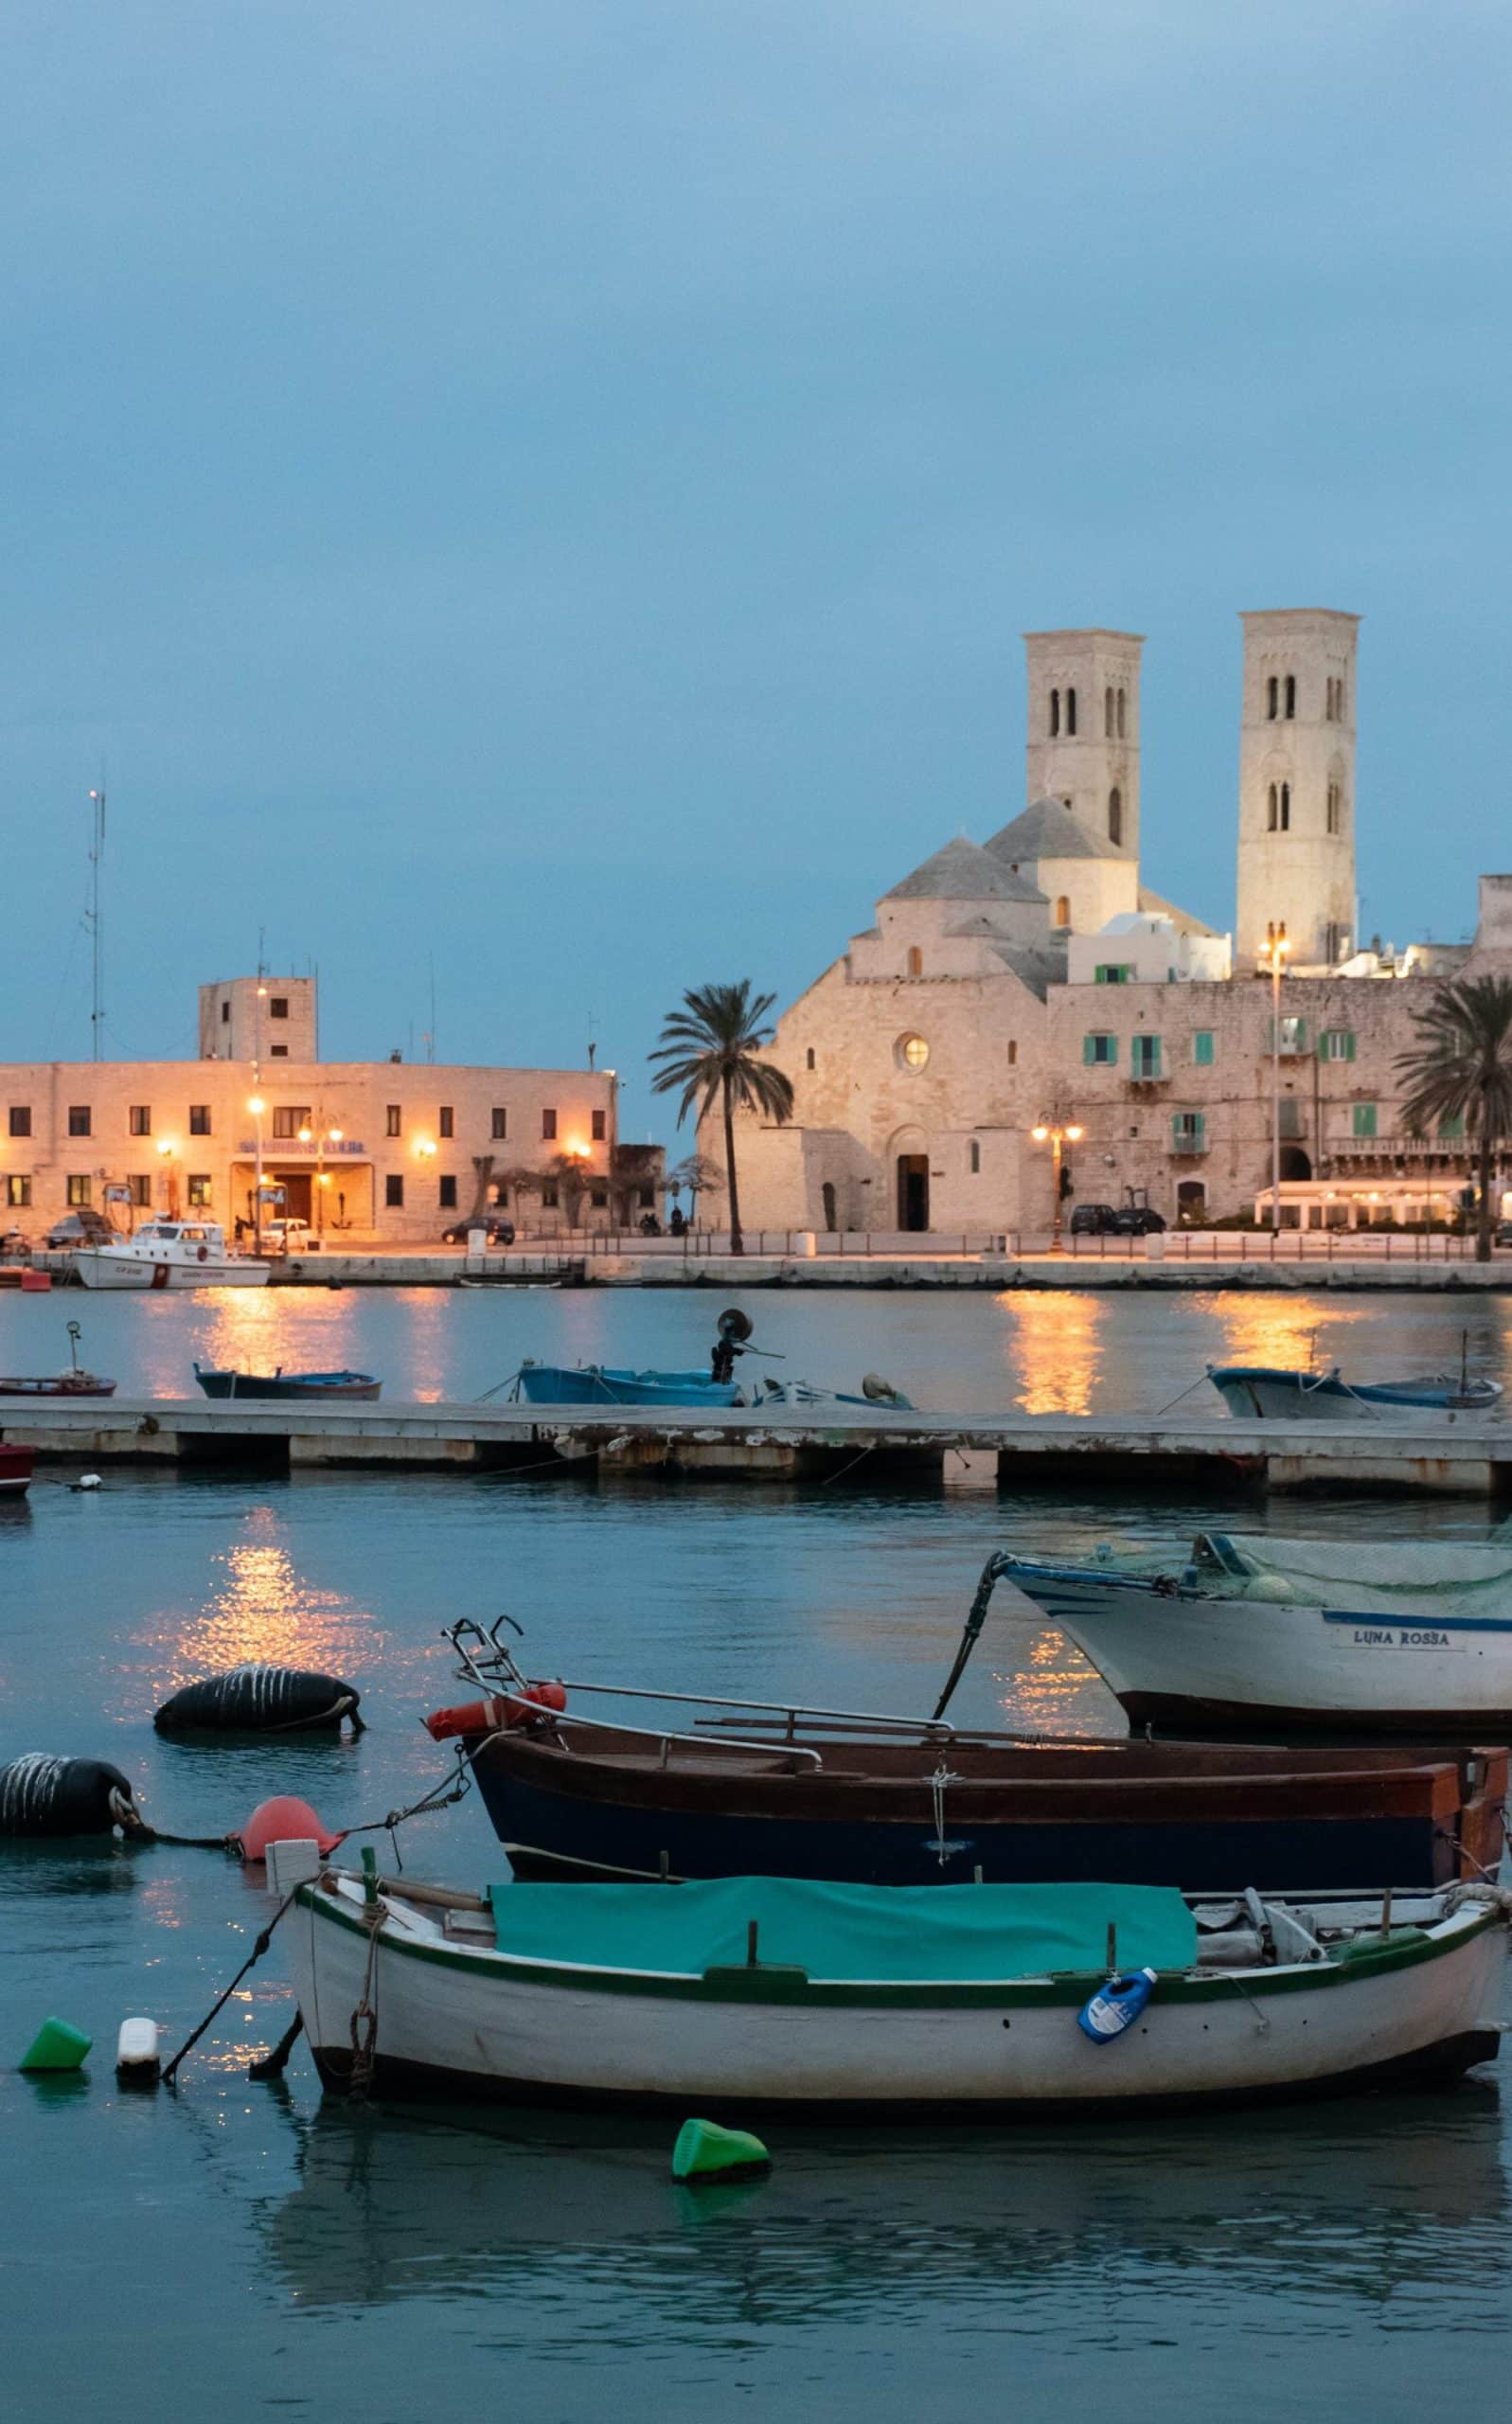 Bari, la capital de la Puglia, es uno de las ciudades menos conocidas de Italia